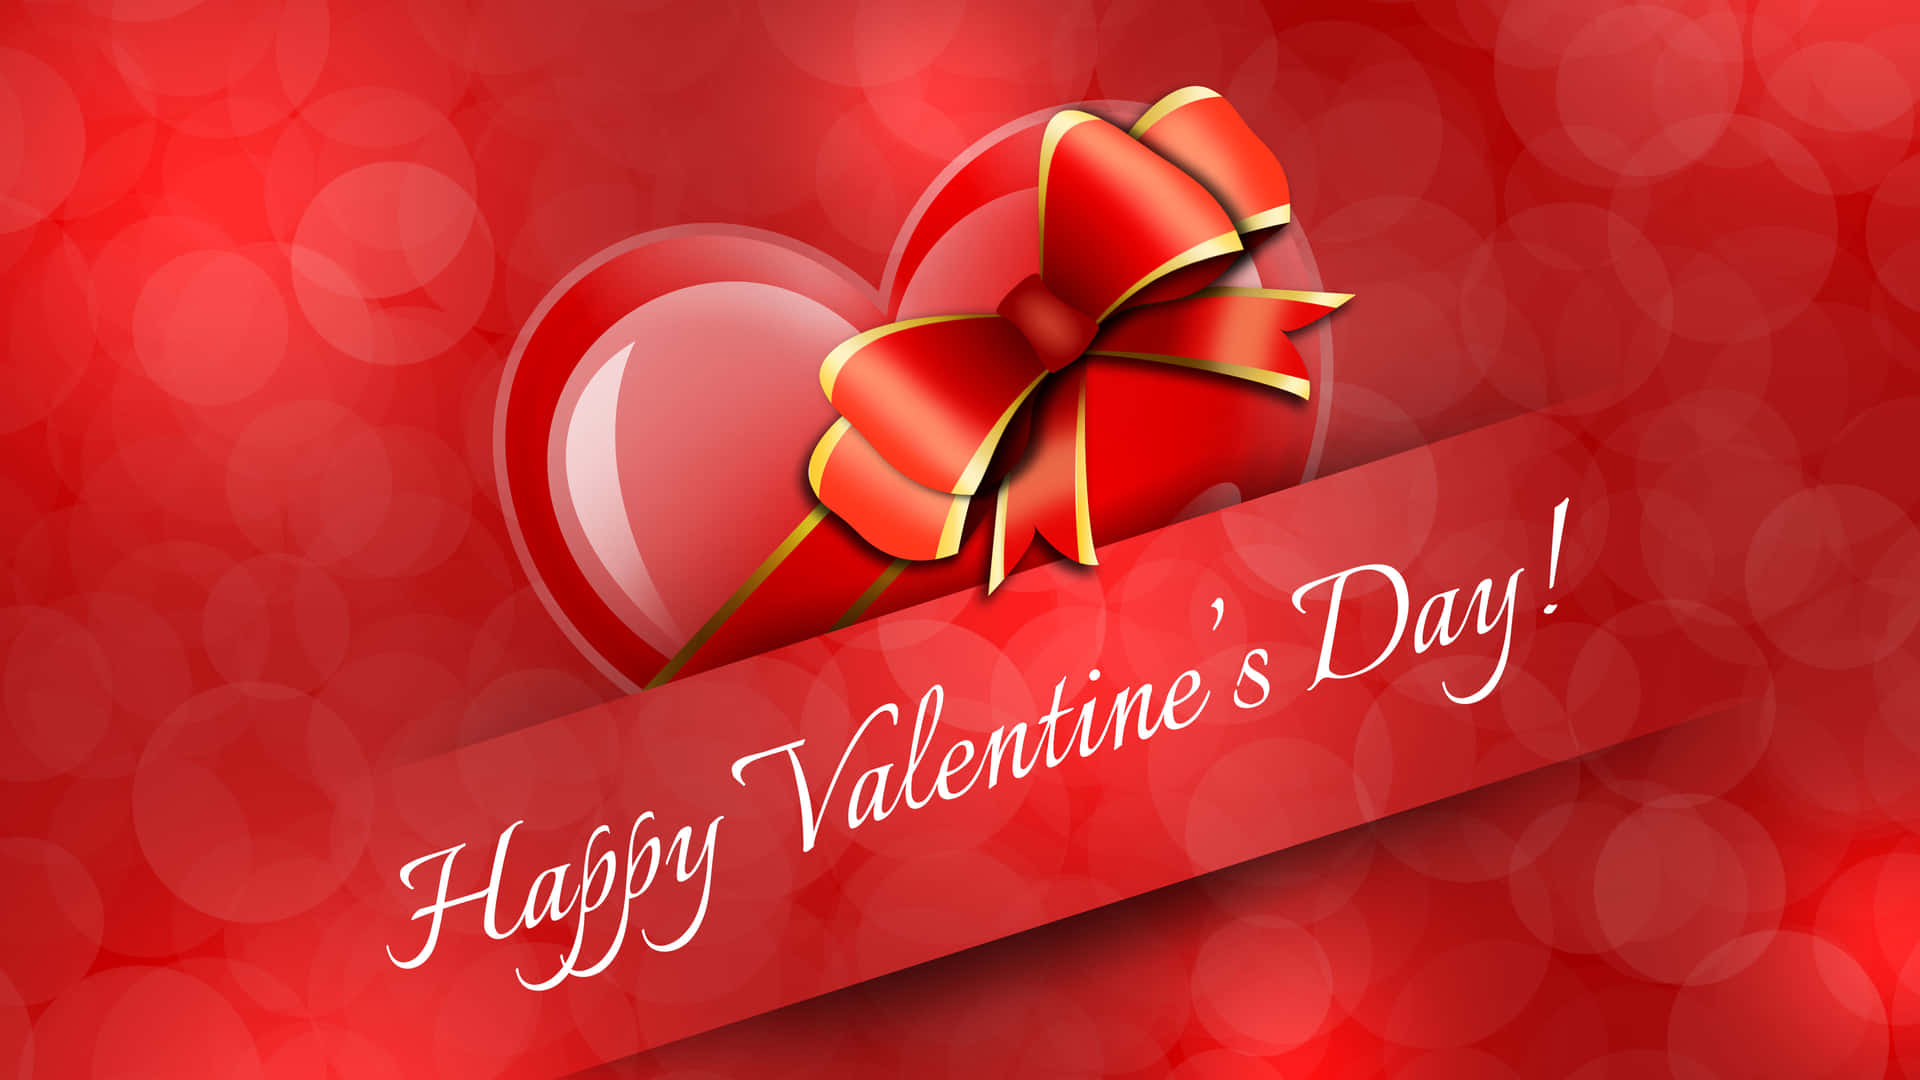 Romantic Happy Valentine's Day Background